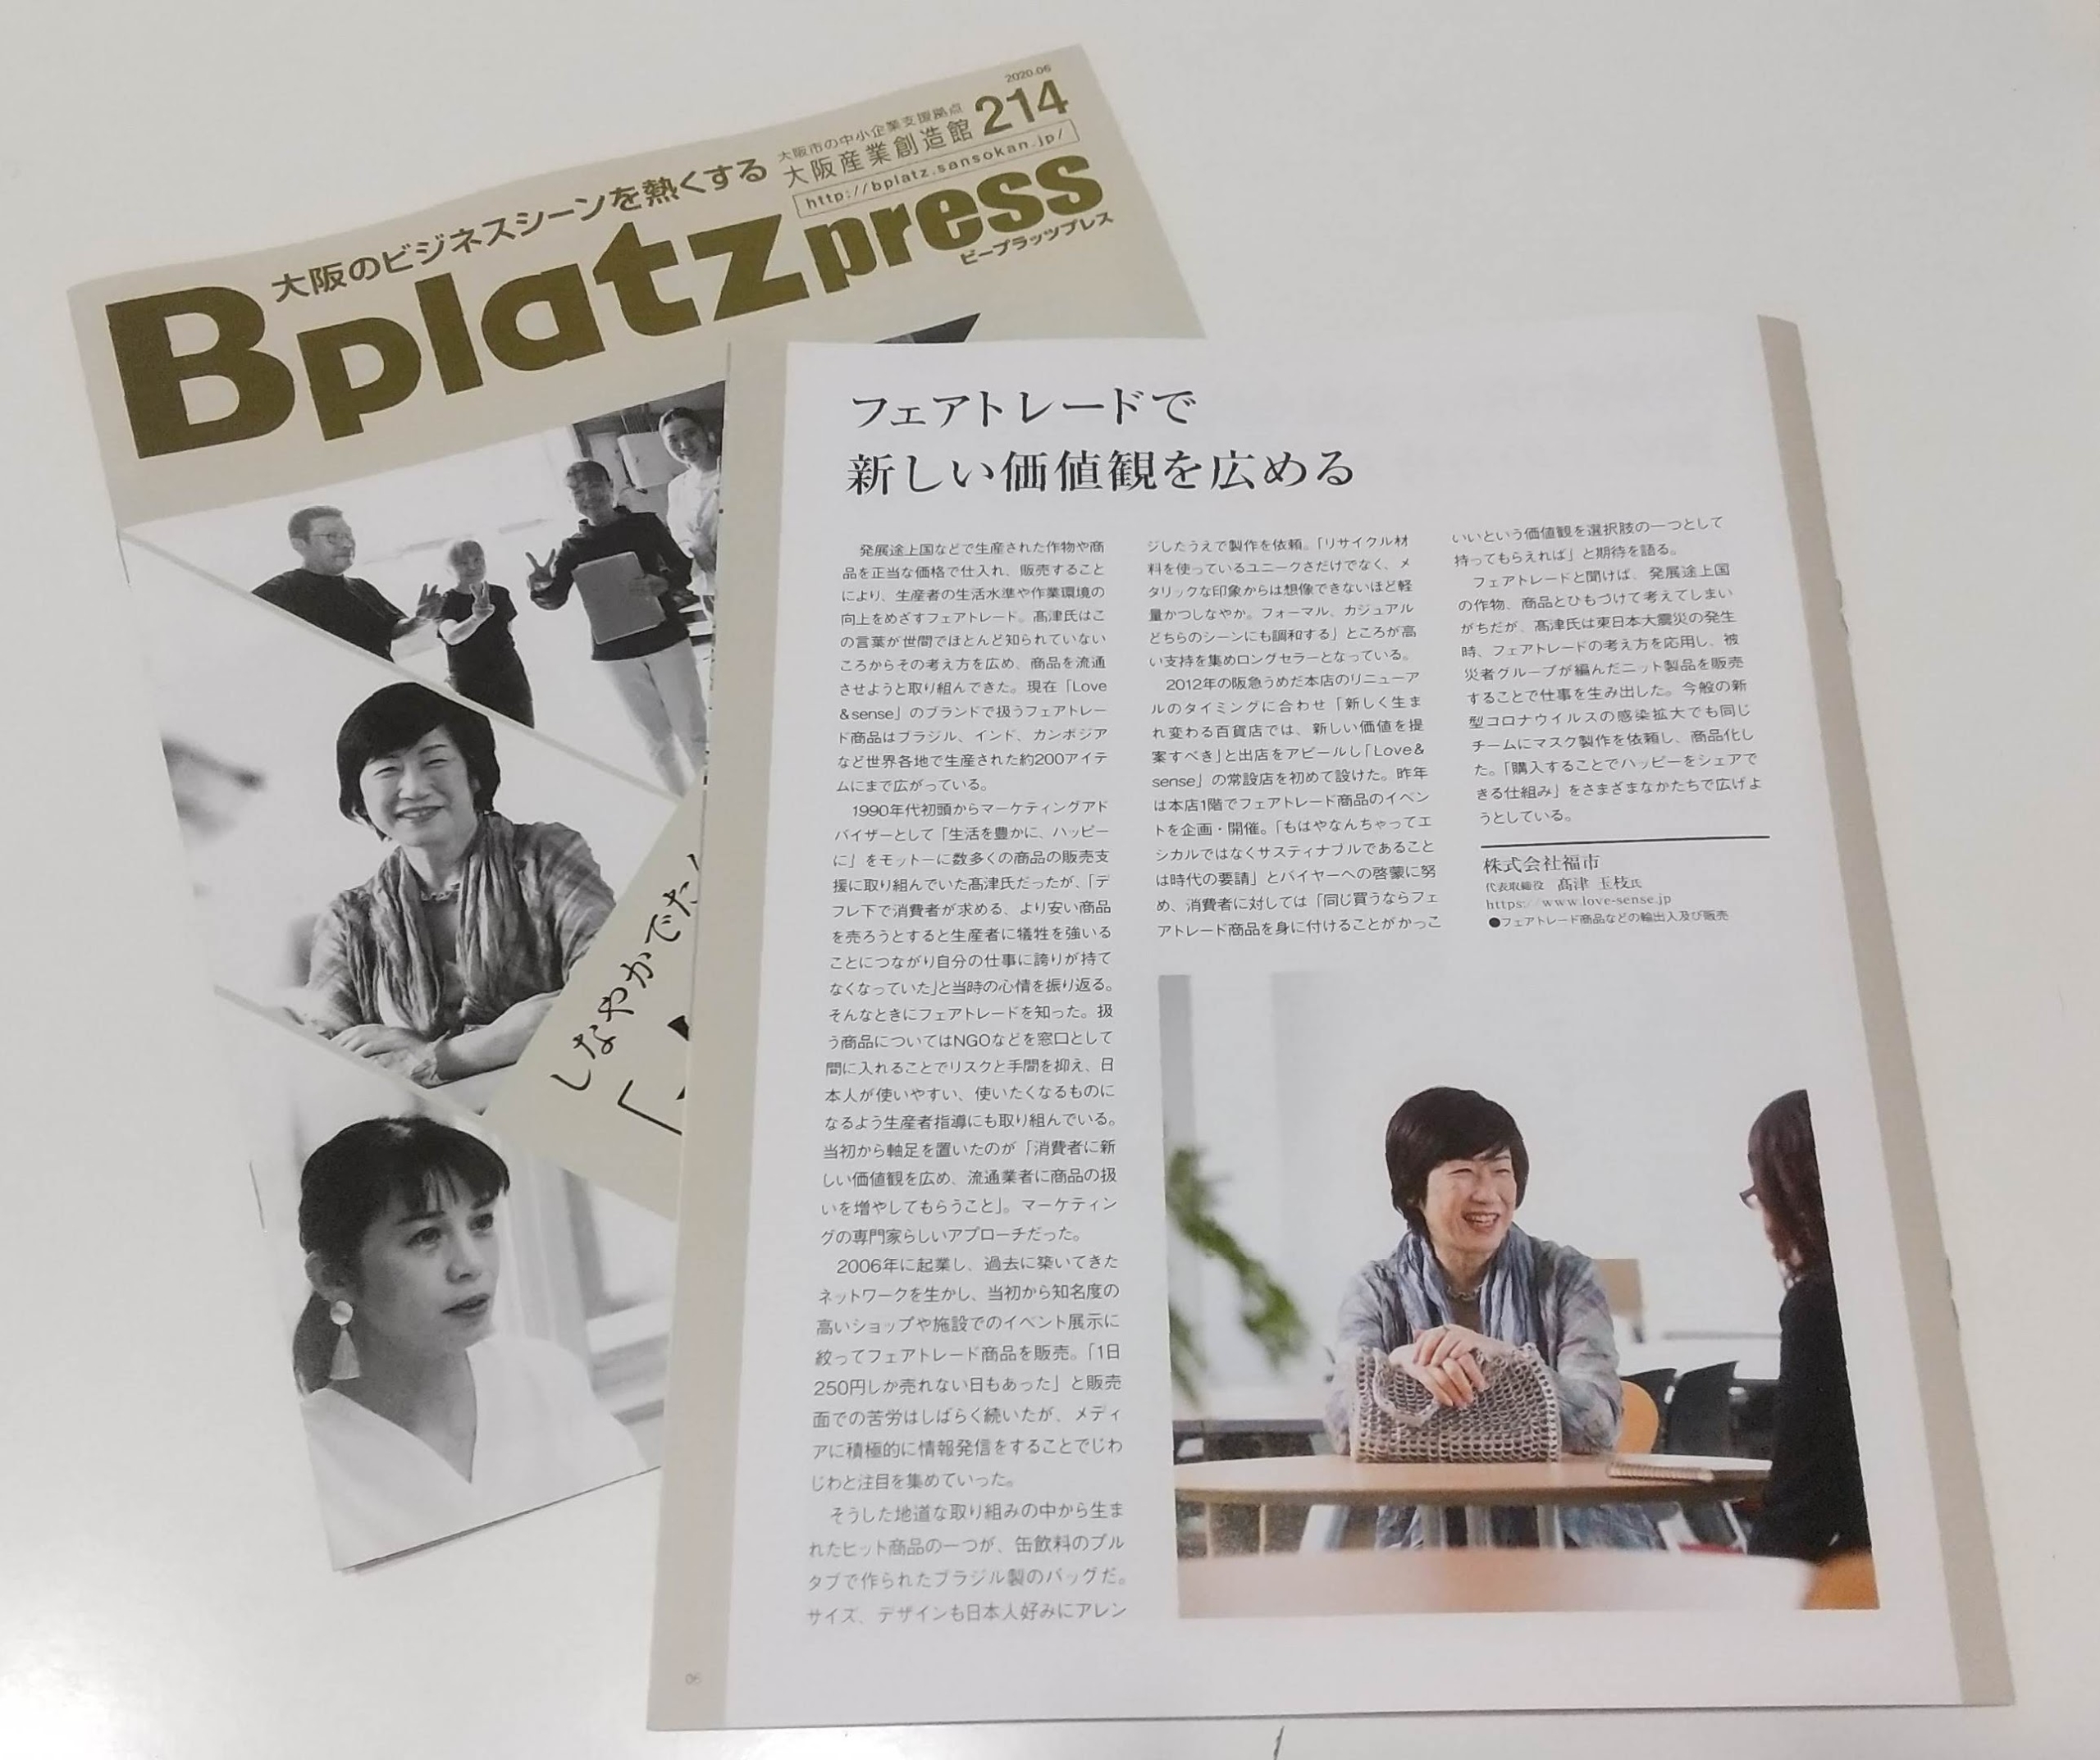 【メディア掲載】 大阪産業創造館「Bplatz press」